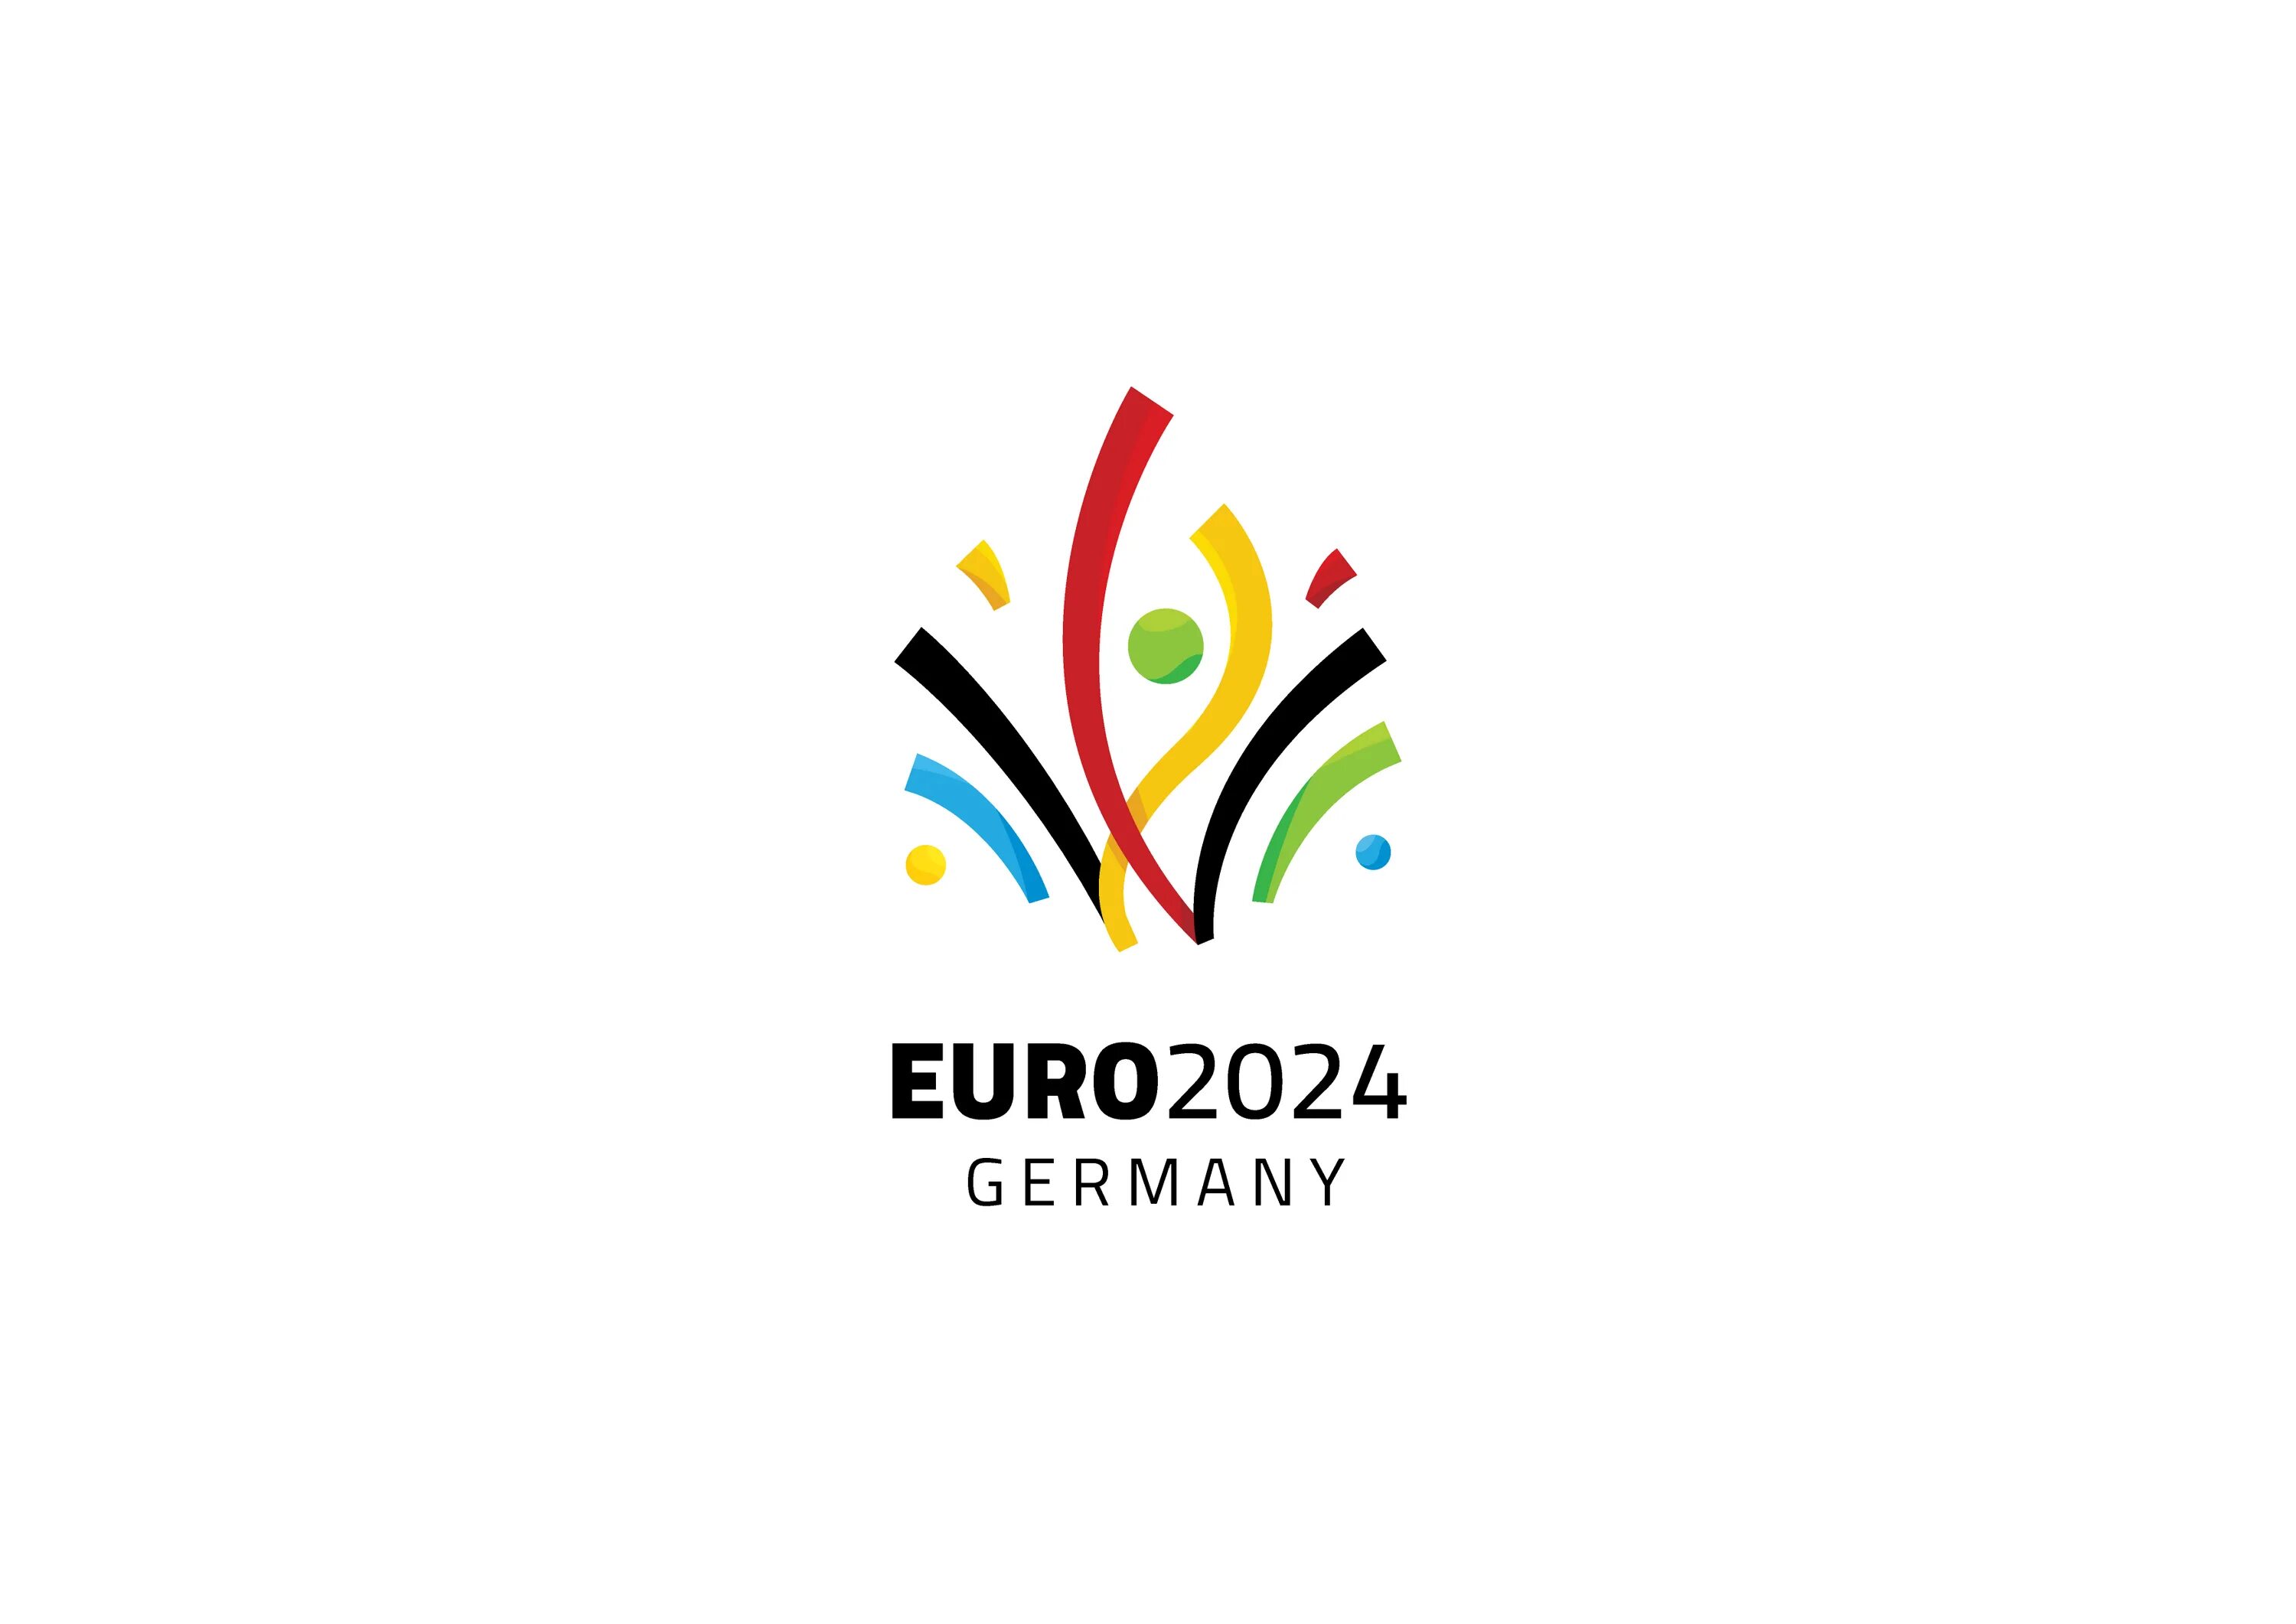 Логотип 2024 на прозрачном фоне. UEFA Euro 2024. Euro 2024 Germany. Euro 2024 logo. Евро 2024 ло́готип.